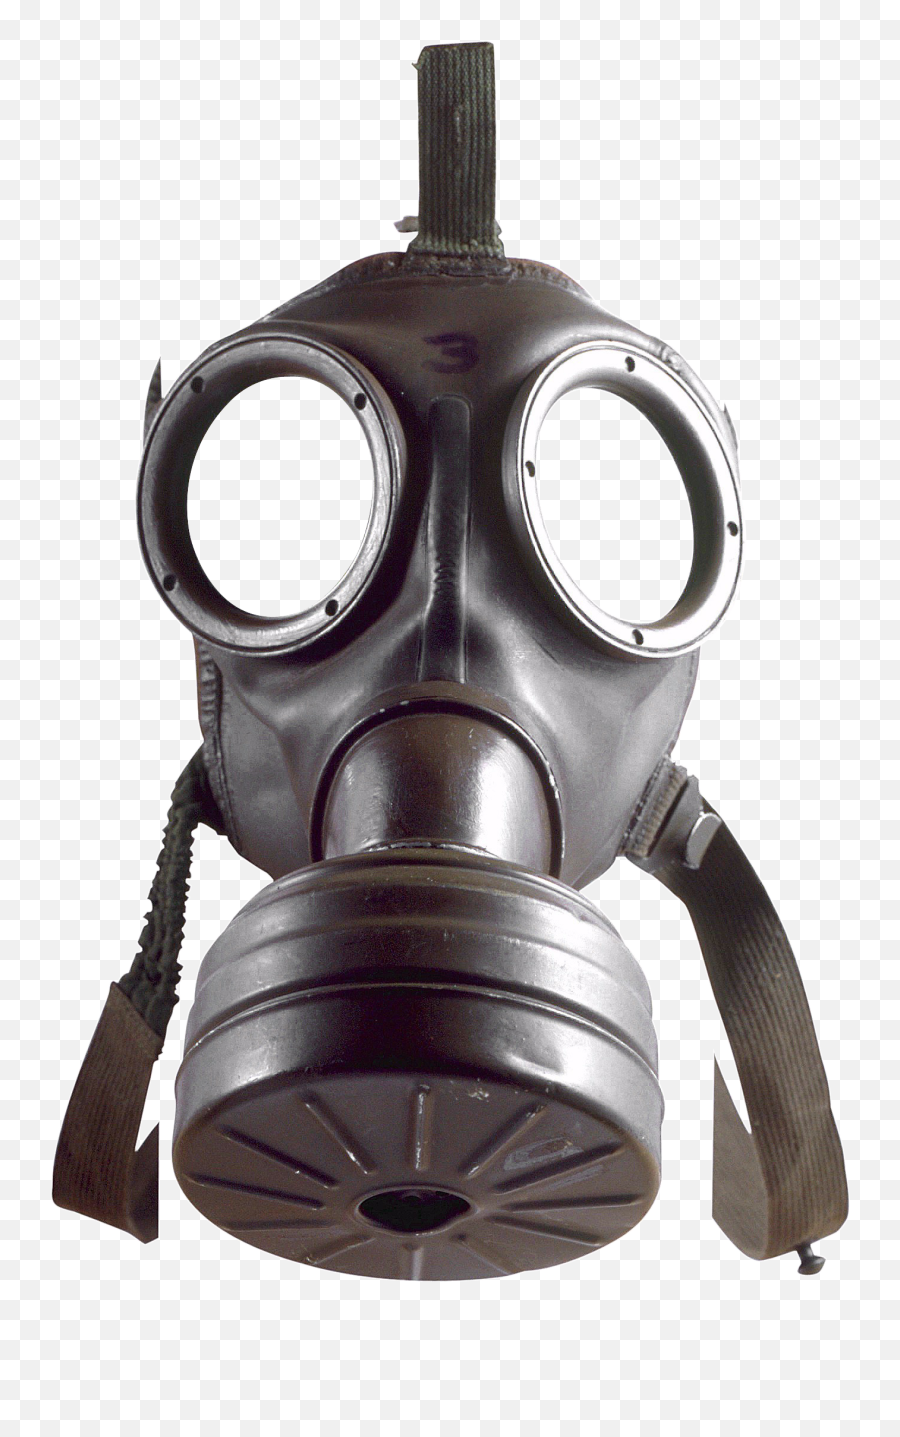 Gas Mask Png - Gas Mask Png,Gas Mask Transparent Background